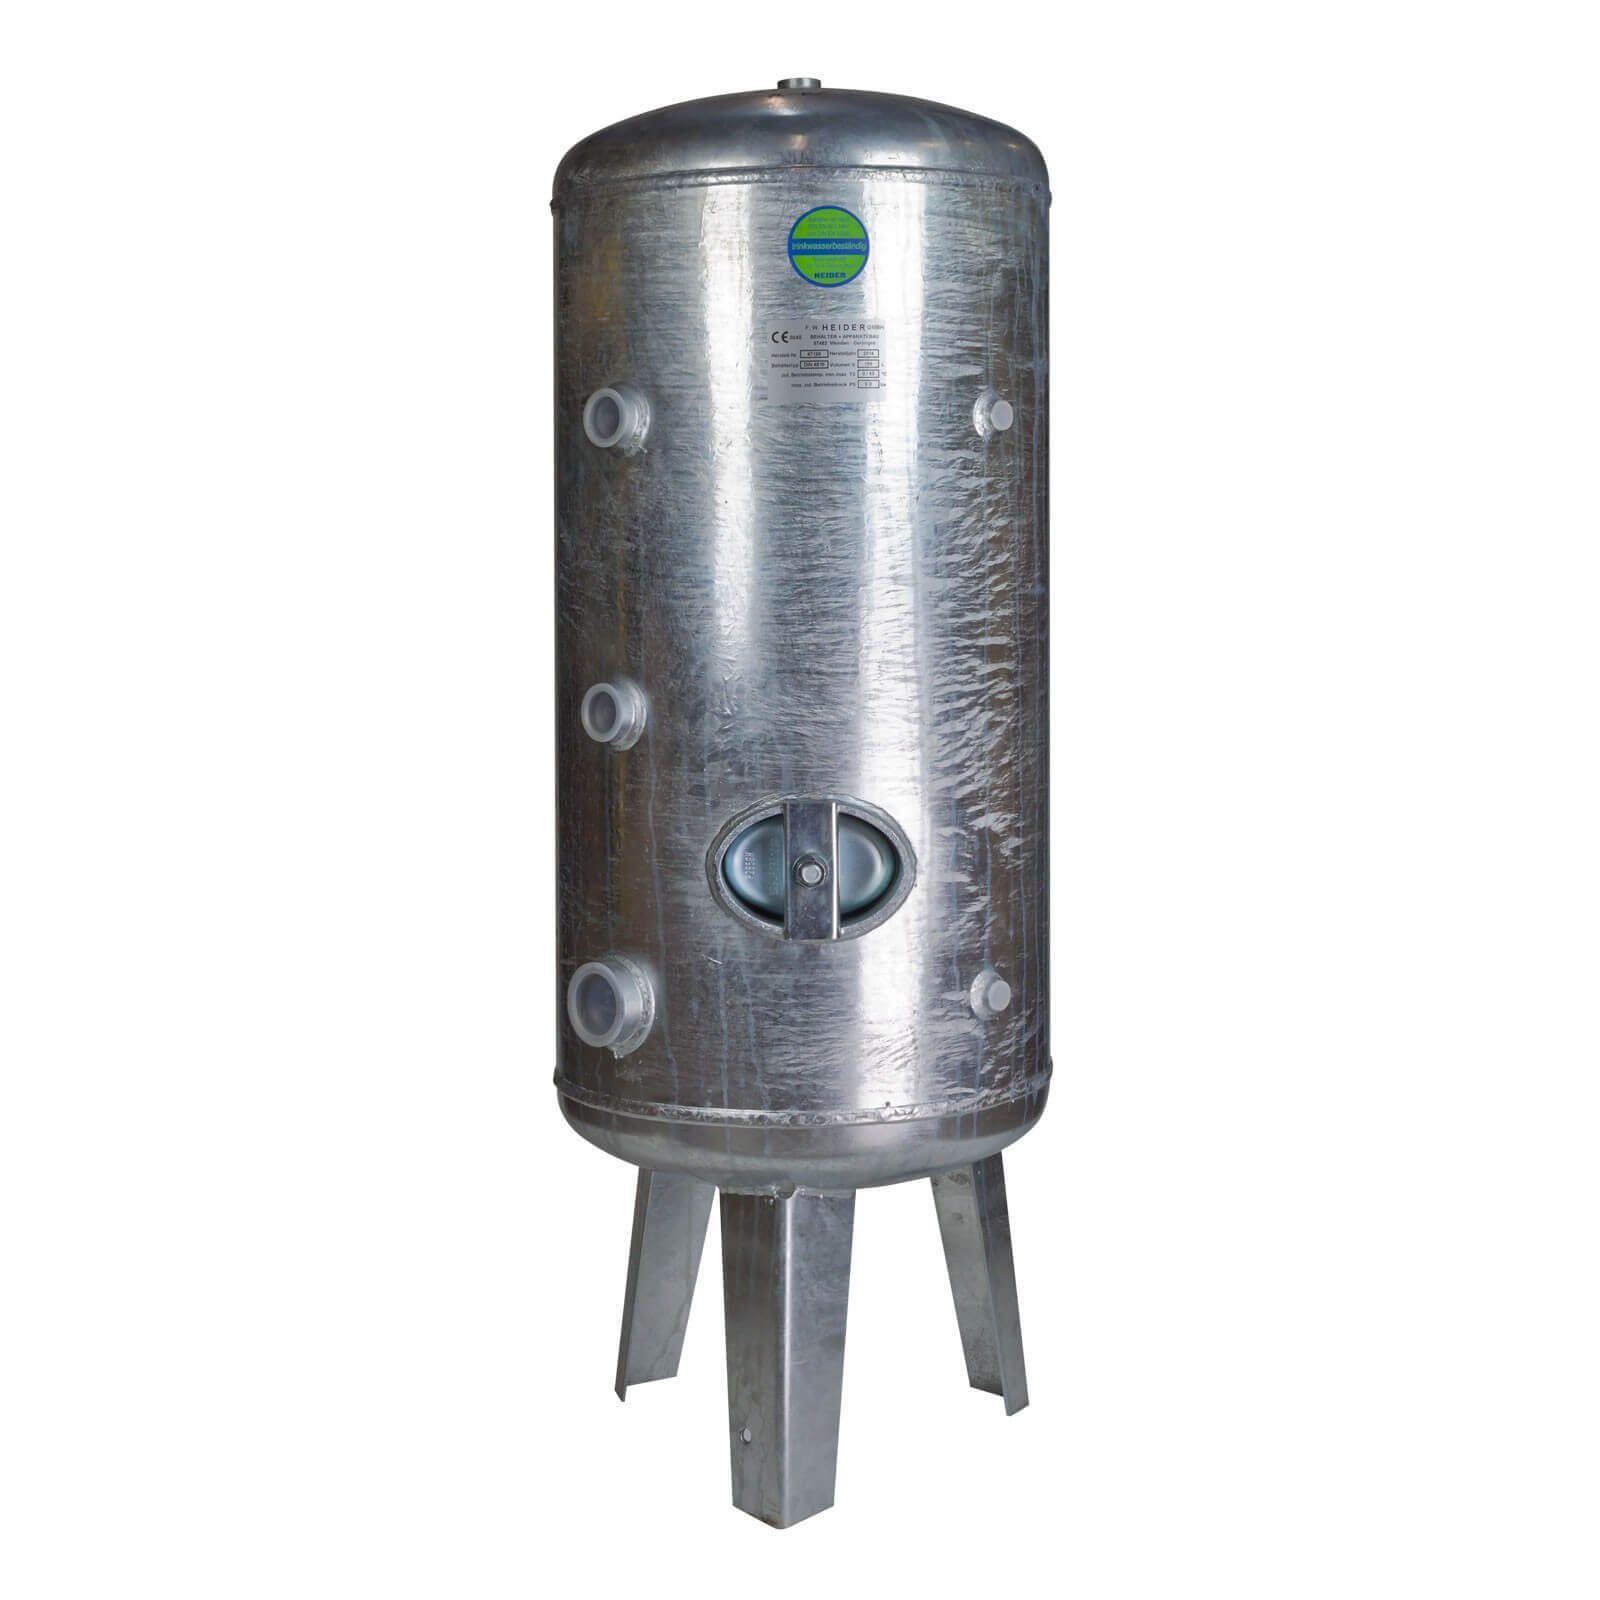 Heider Wasserkessel Heider Druckbehälter Wasser verzinkt Druckkessel 750L 6 bar für